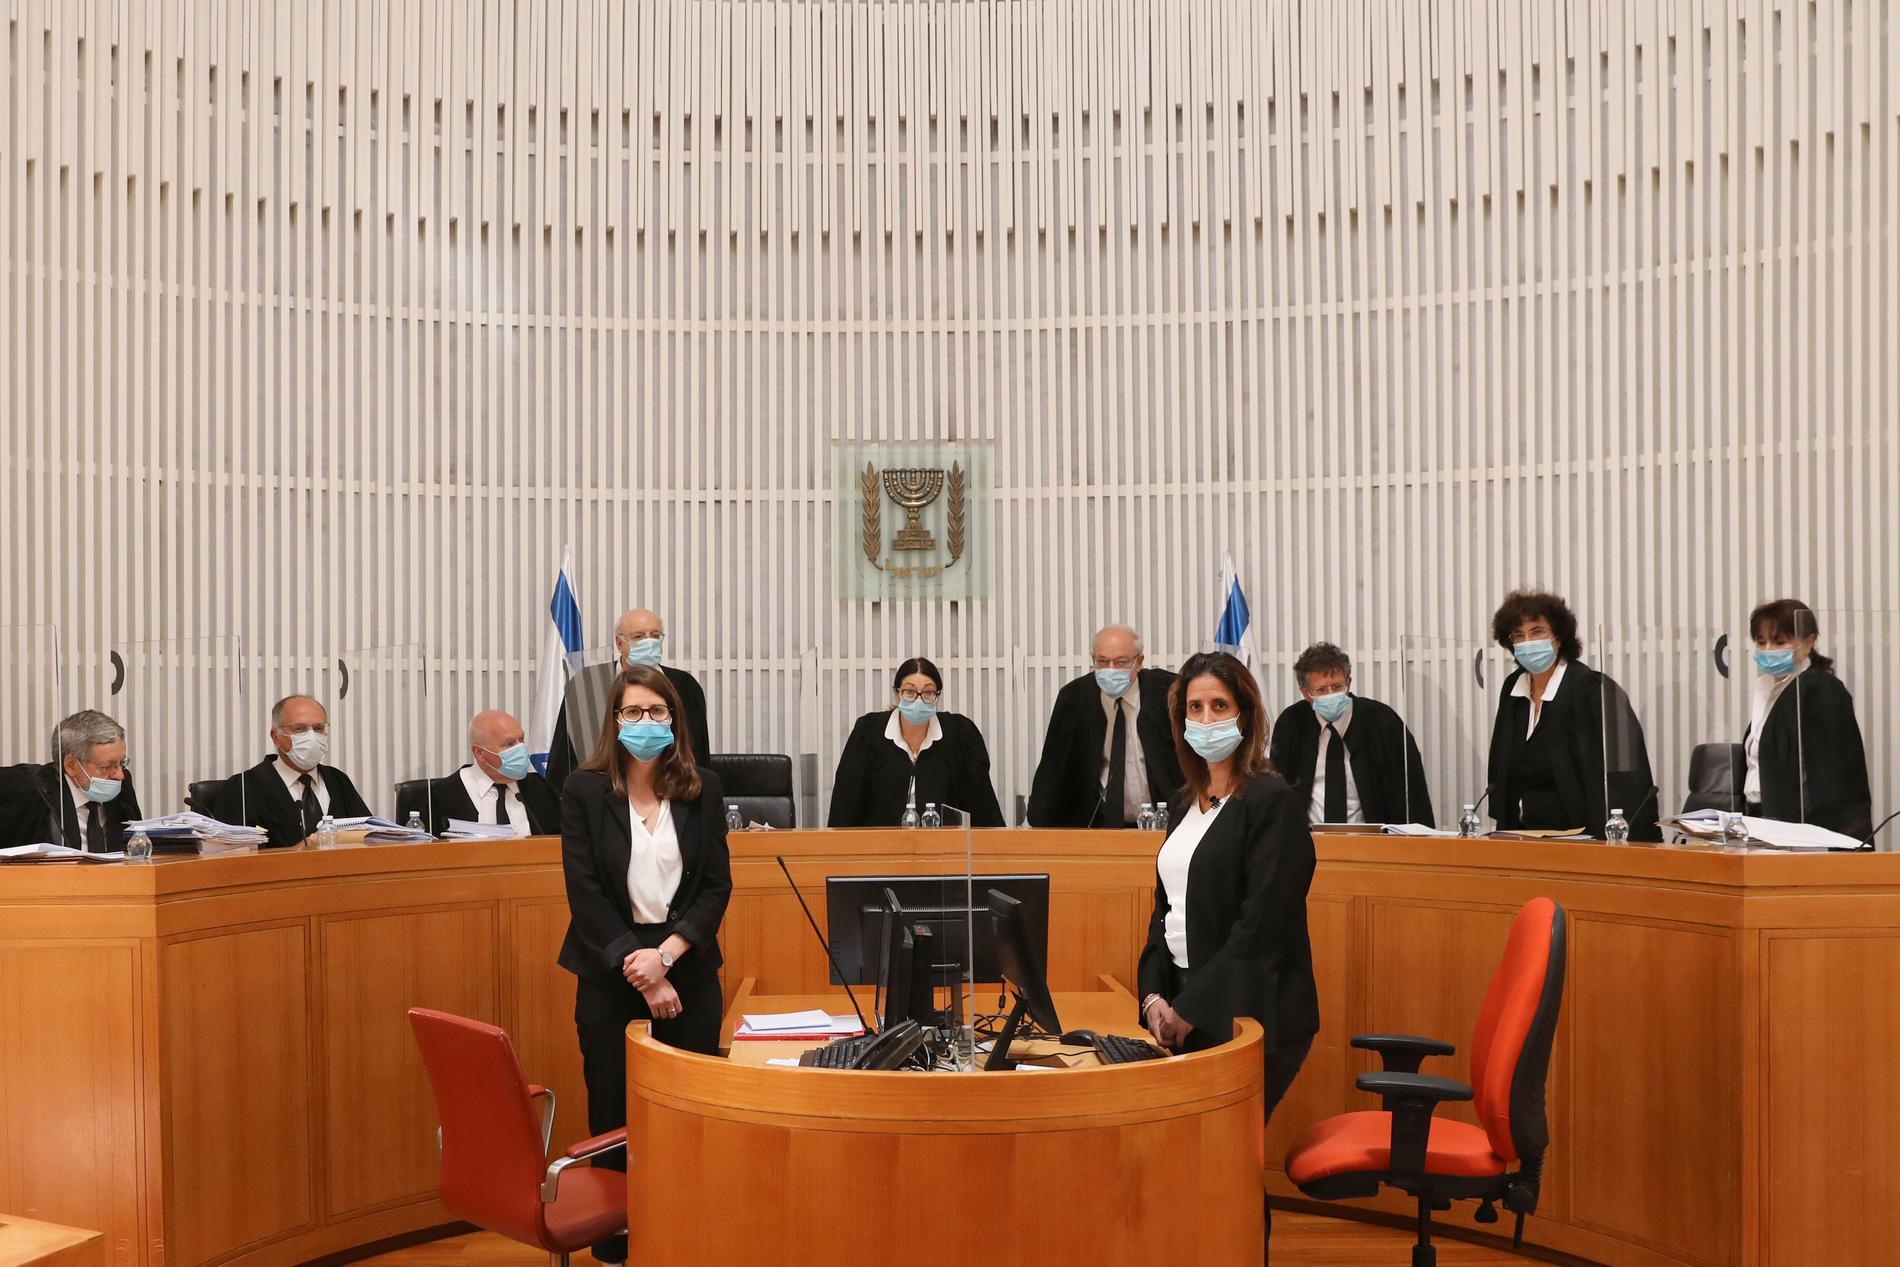 Elva domare med munskydd kom fram till att Benjamin Netanyahu får bilda regering trots att han ska ställas inför rätta för korruption.